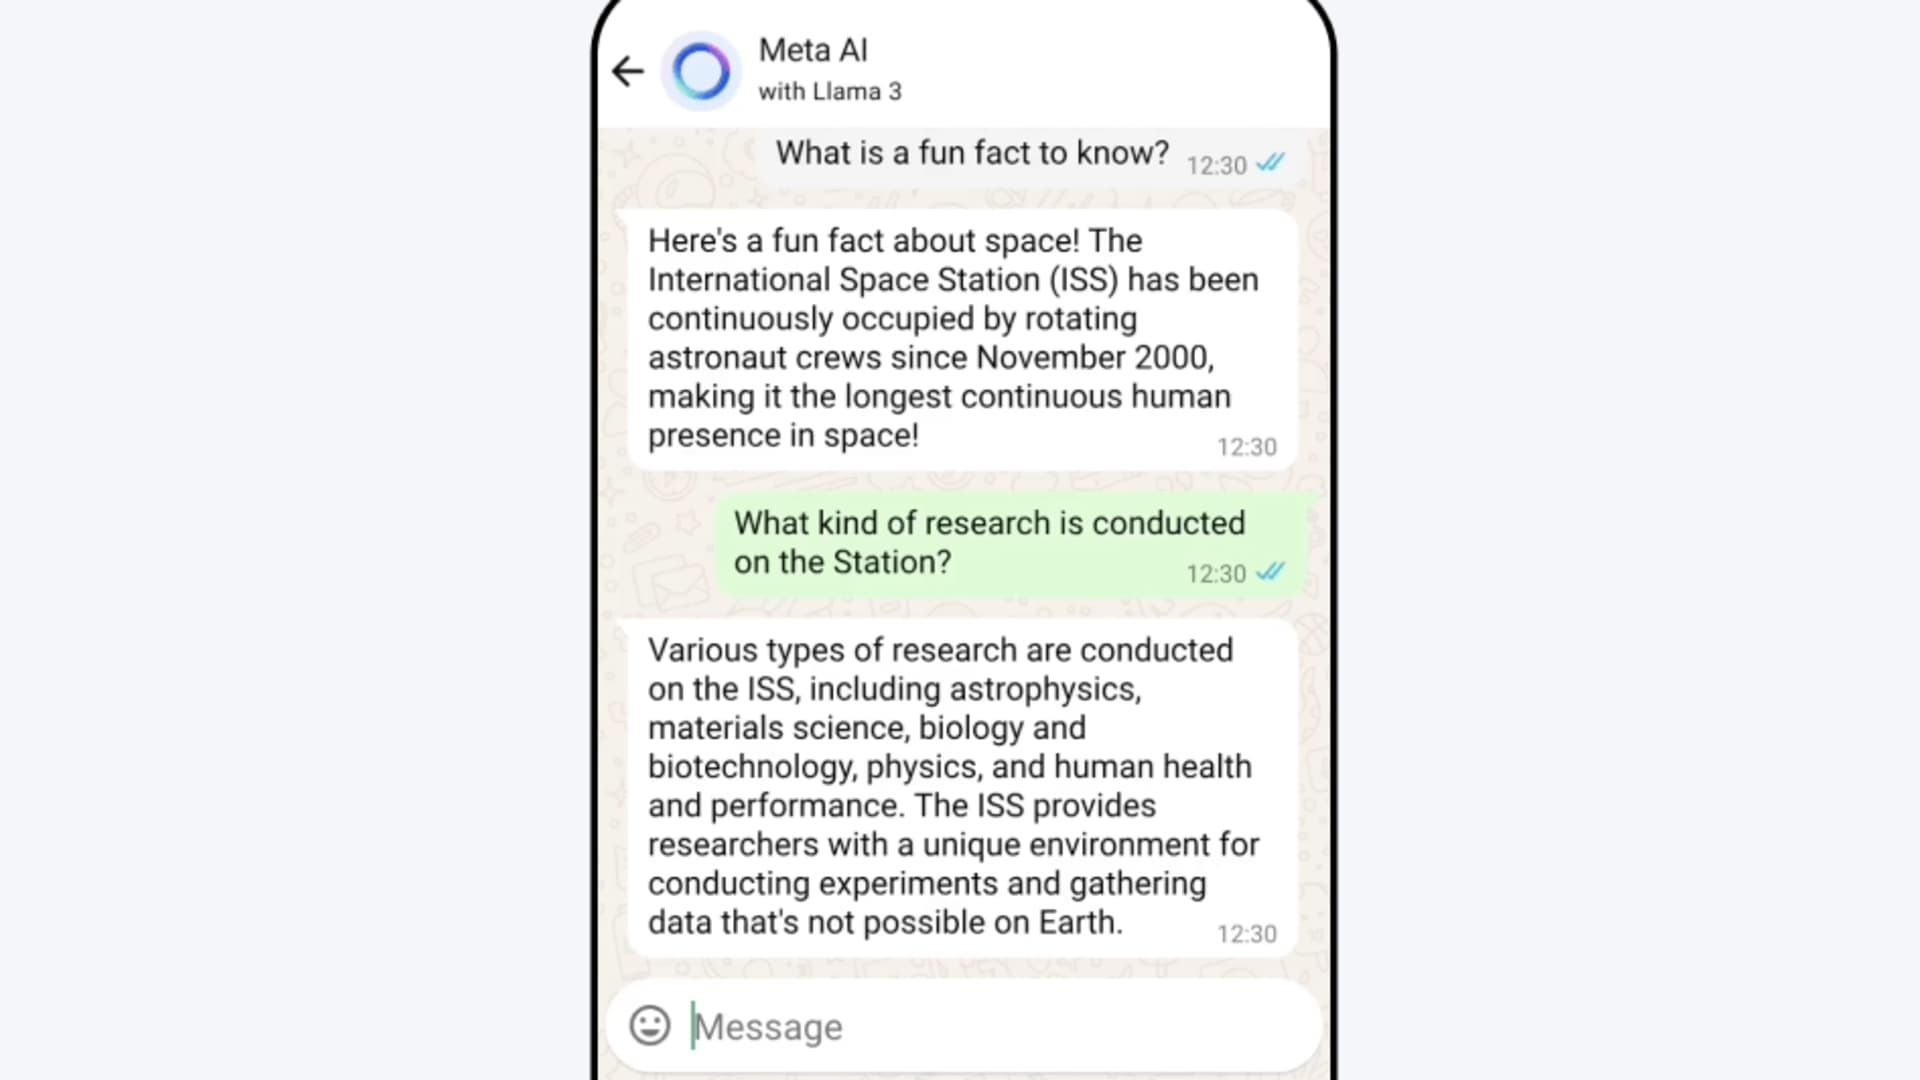 Meta AI in WhatsApp